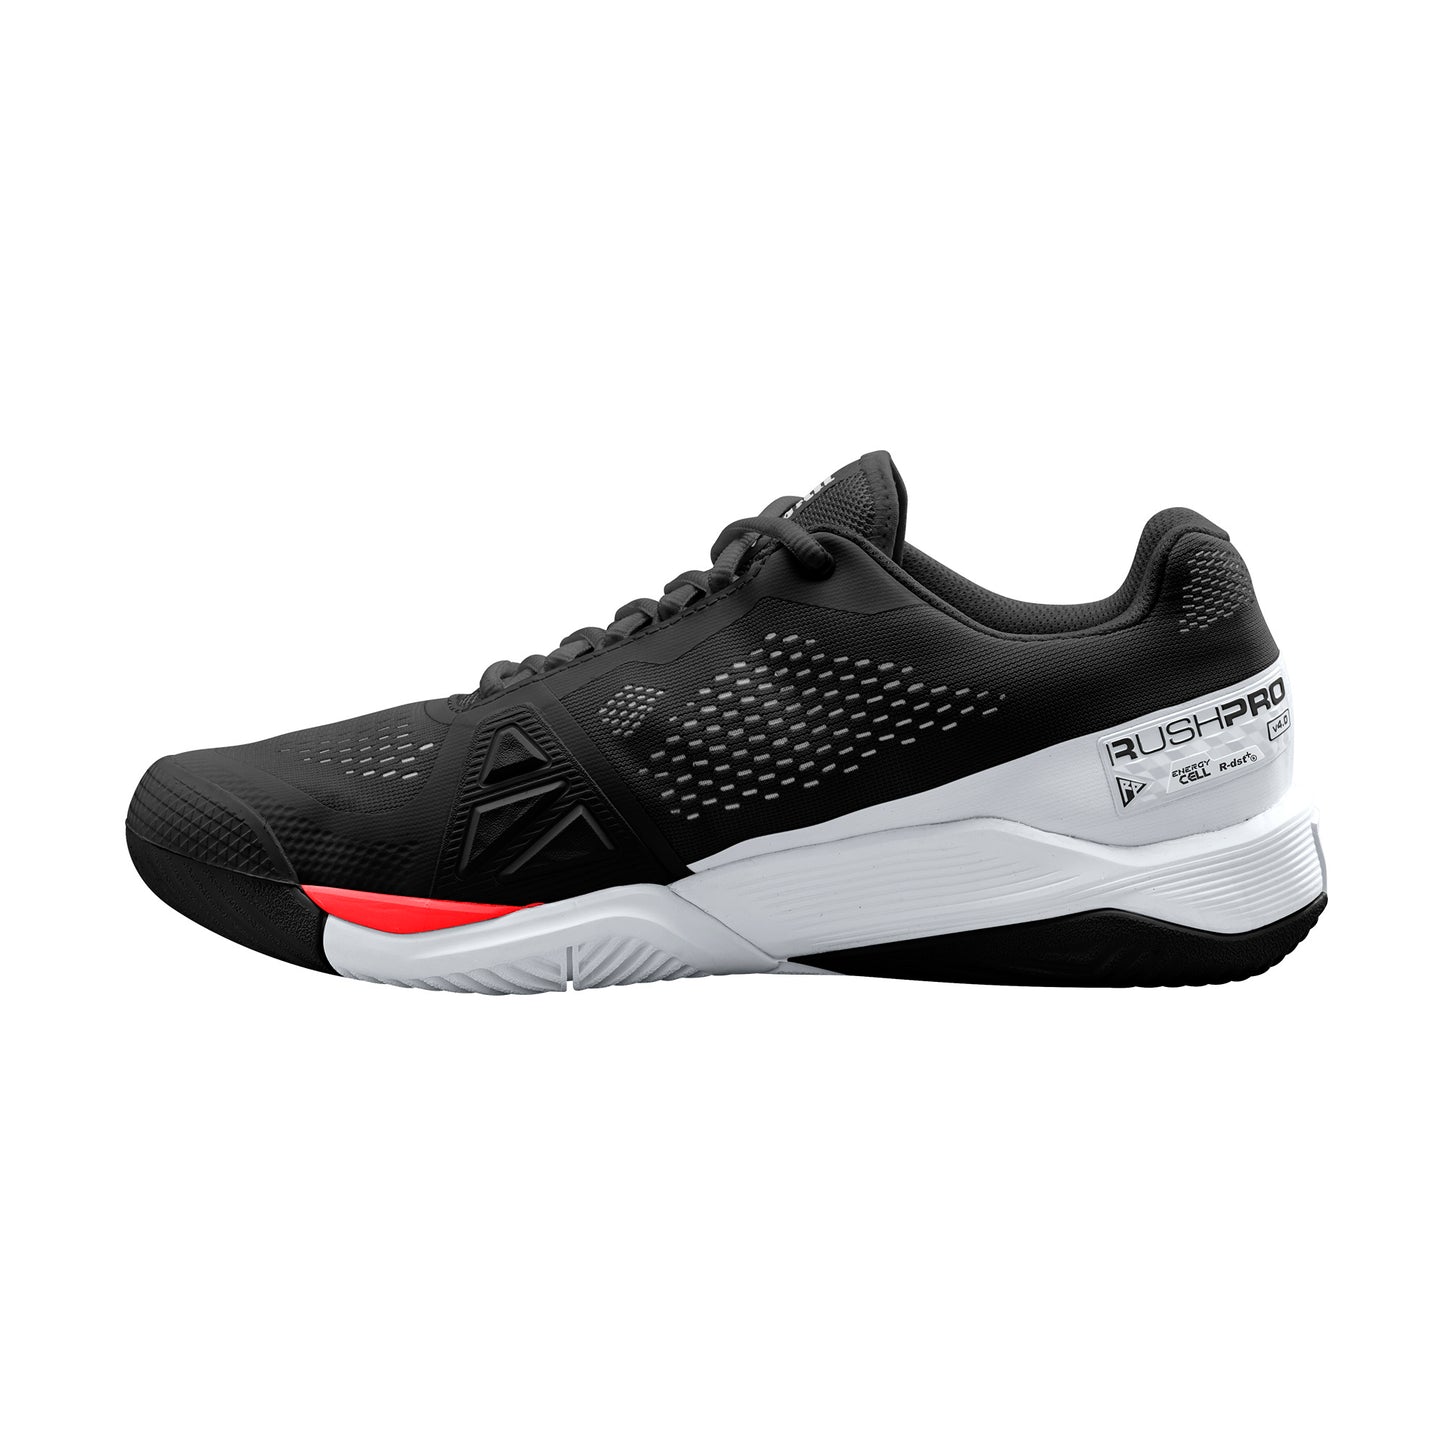 Wilson Rush Pro 4.0 Men shoes - Black/White/Red